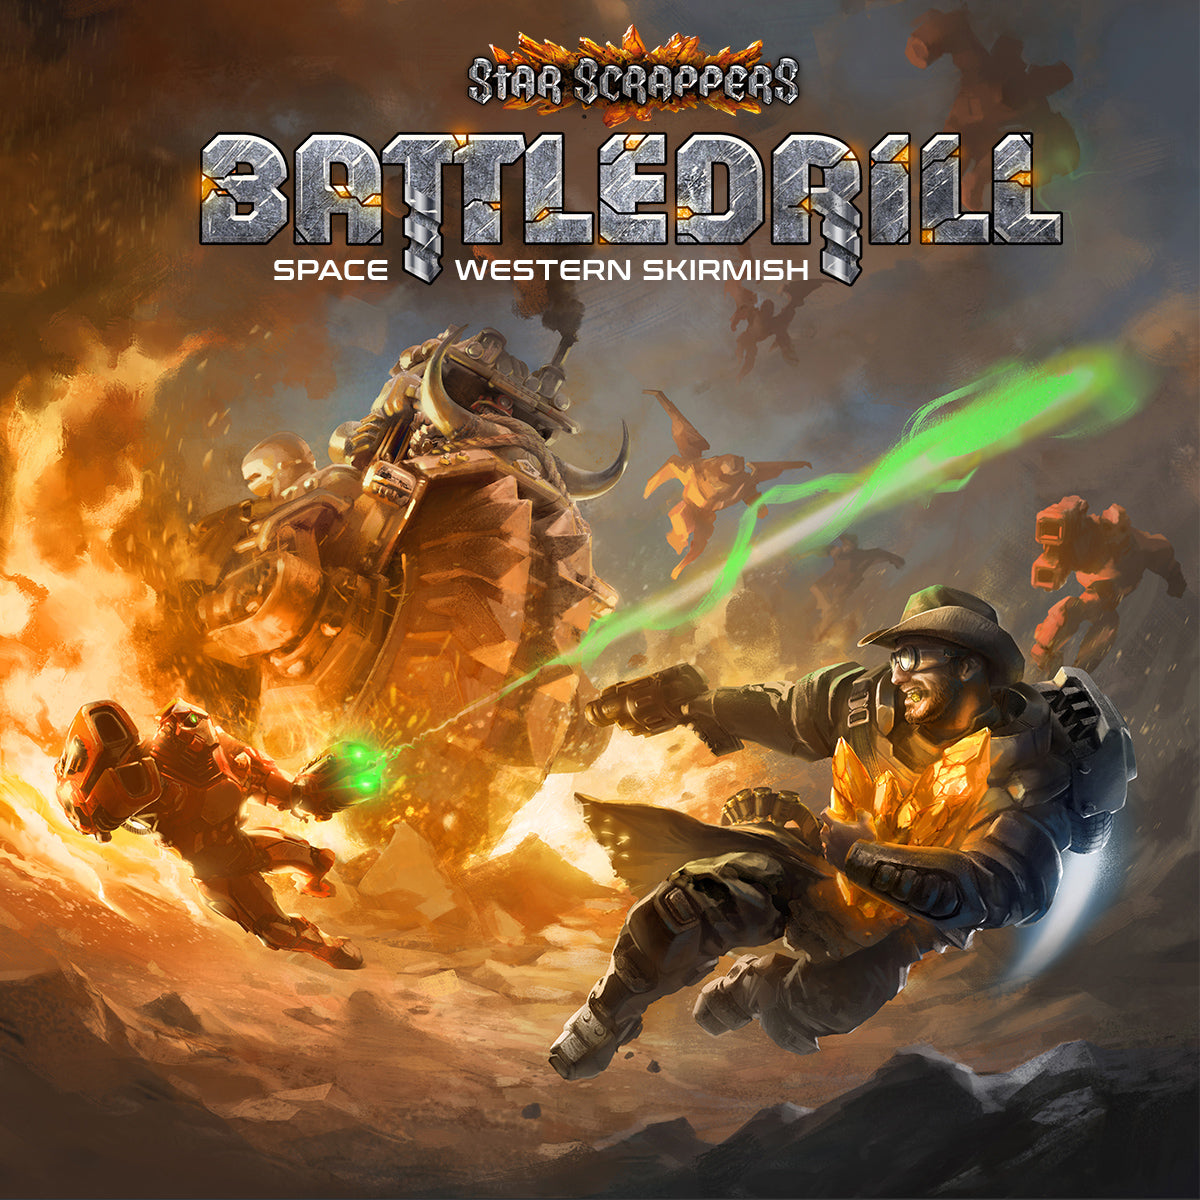 Oddgrabber Metanel Fraktion Battledrill Kickstarter Brettspiele, Rollenspiel Maler